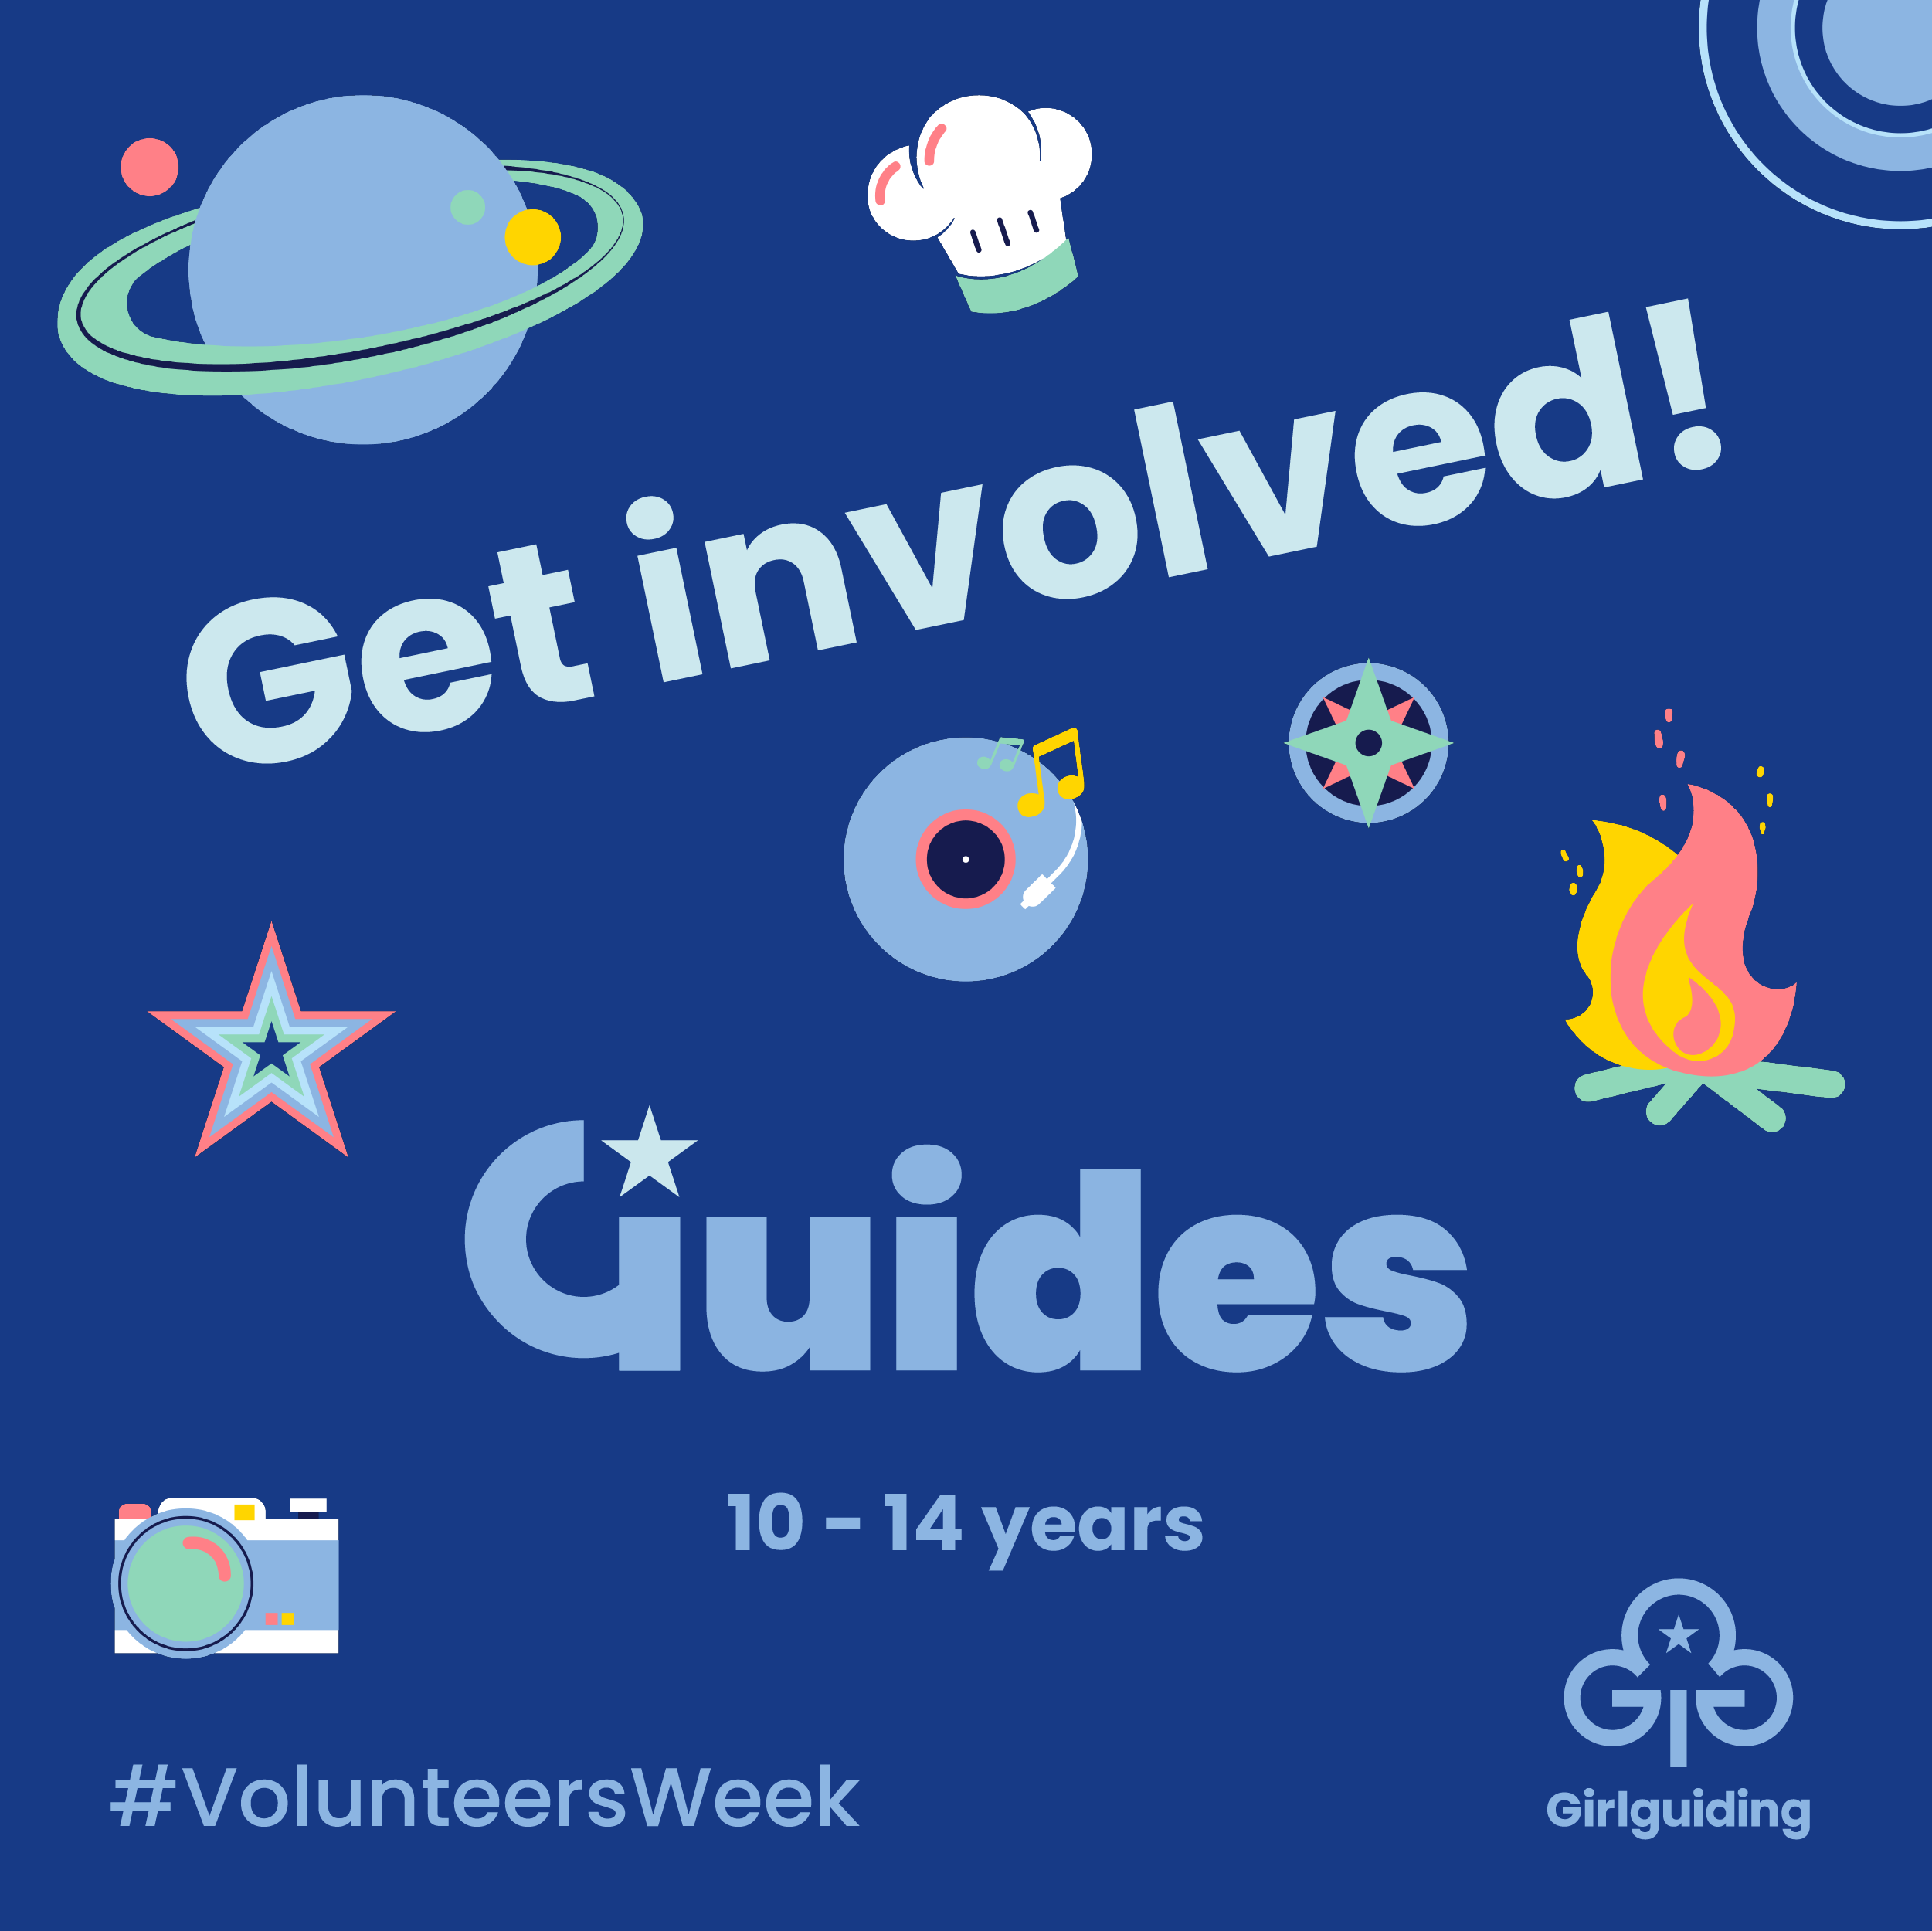 Guides (10-14) - Get Involved, Volunteers Week